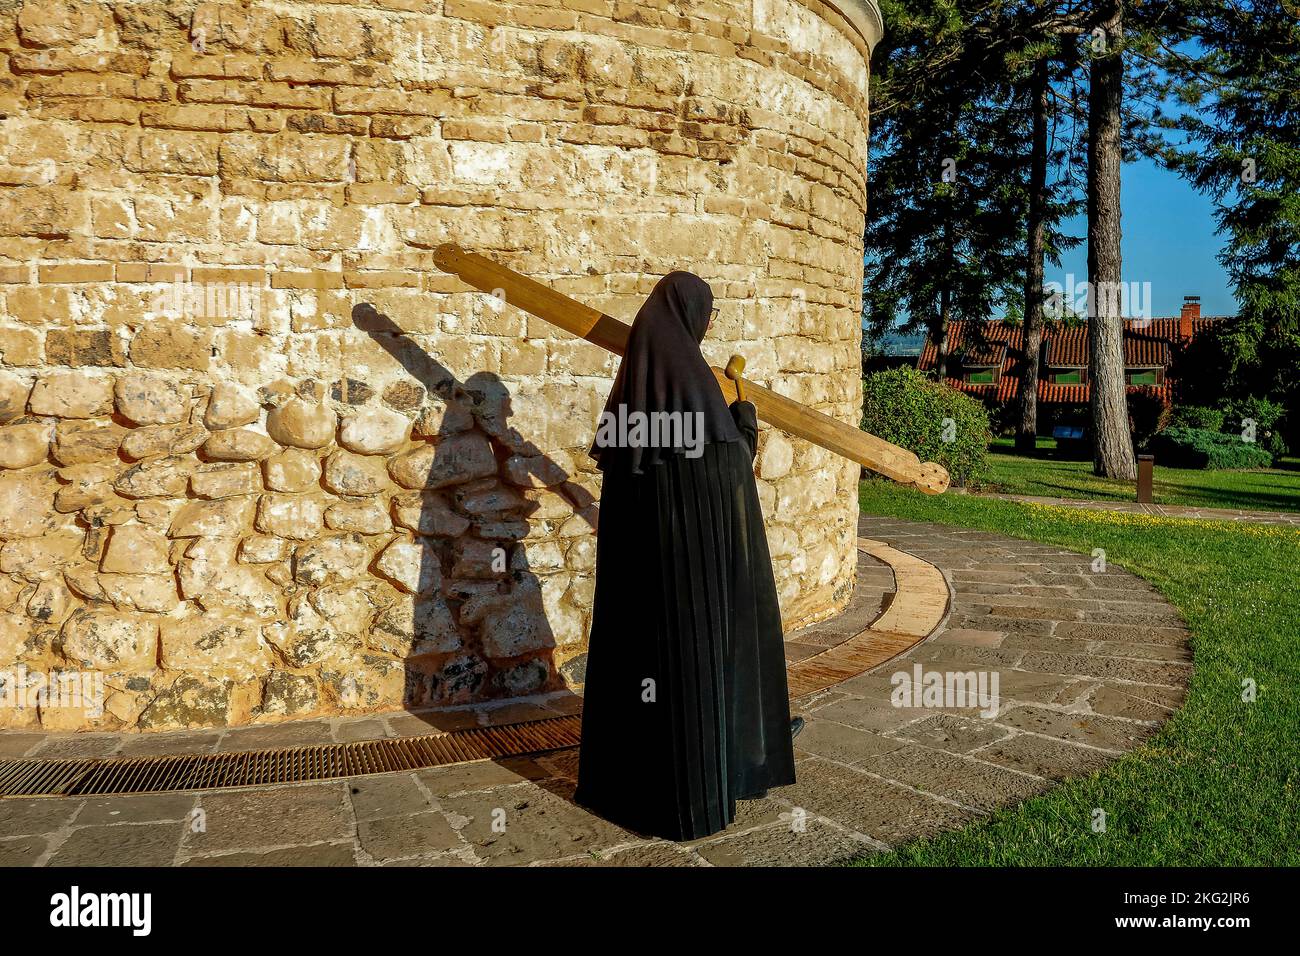 Orthodoxes Kloster Zica in der Nähe von Kraljevo, Serbien. Nonne ruft zu einer Morgenfeier, während sie durch die Kirche geht Stockfoto